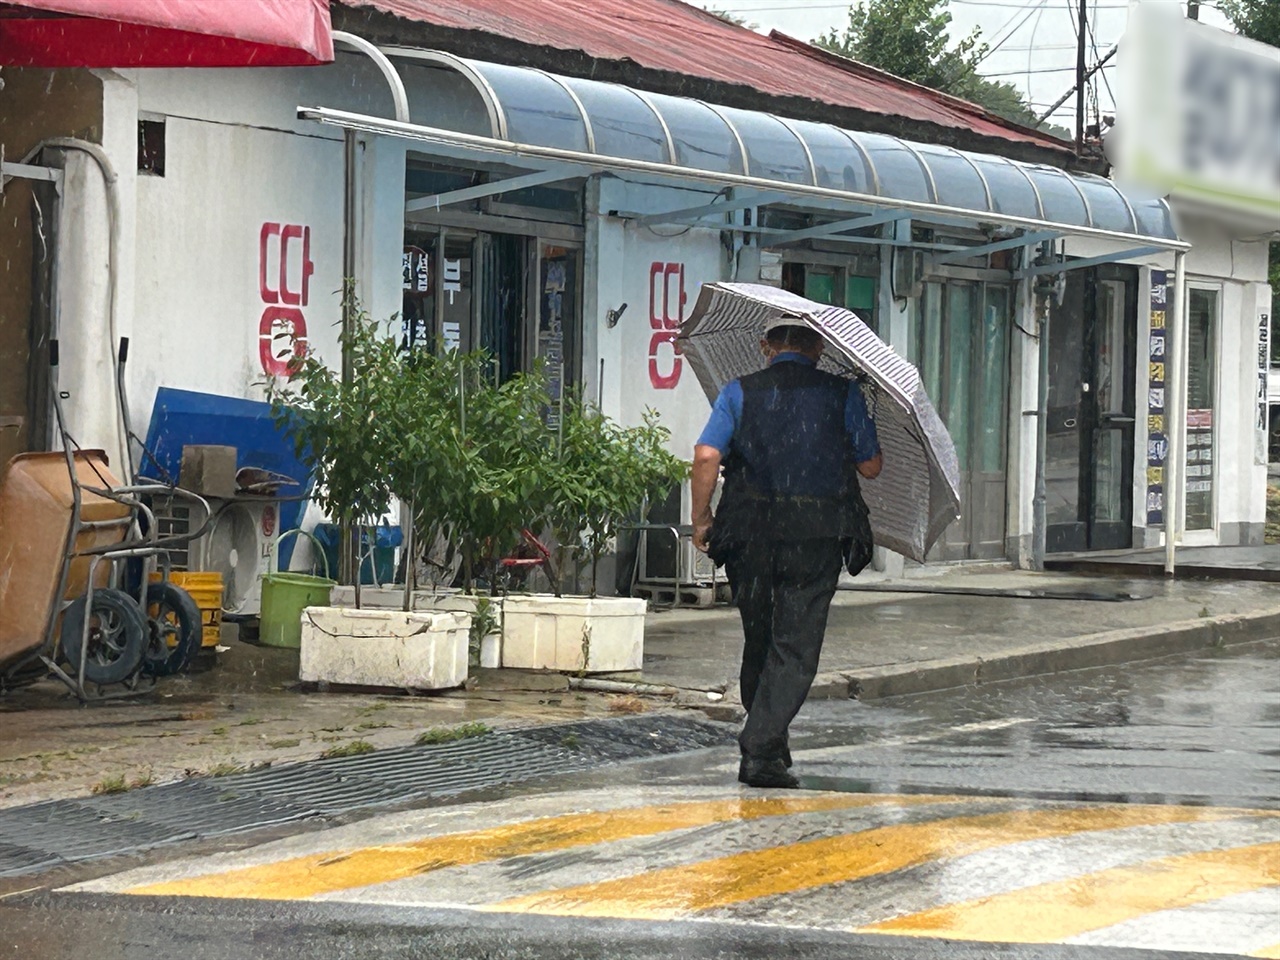 전국이 제6호 태풍 ‘카눈’의 영향권에 들면서, 바람이 거세지고 비가 내리고 있다. 홍성군 갈산면에서 한 어르신이 우산을 쓰고 힘겹게 걸어가고 있다. 